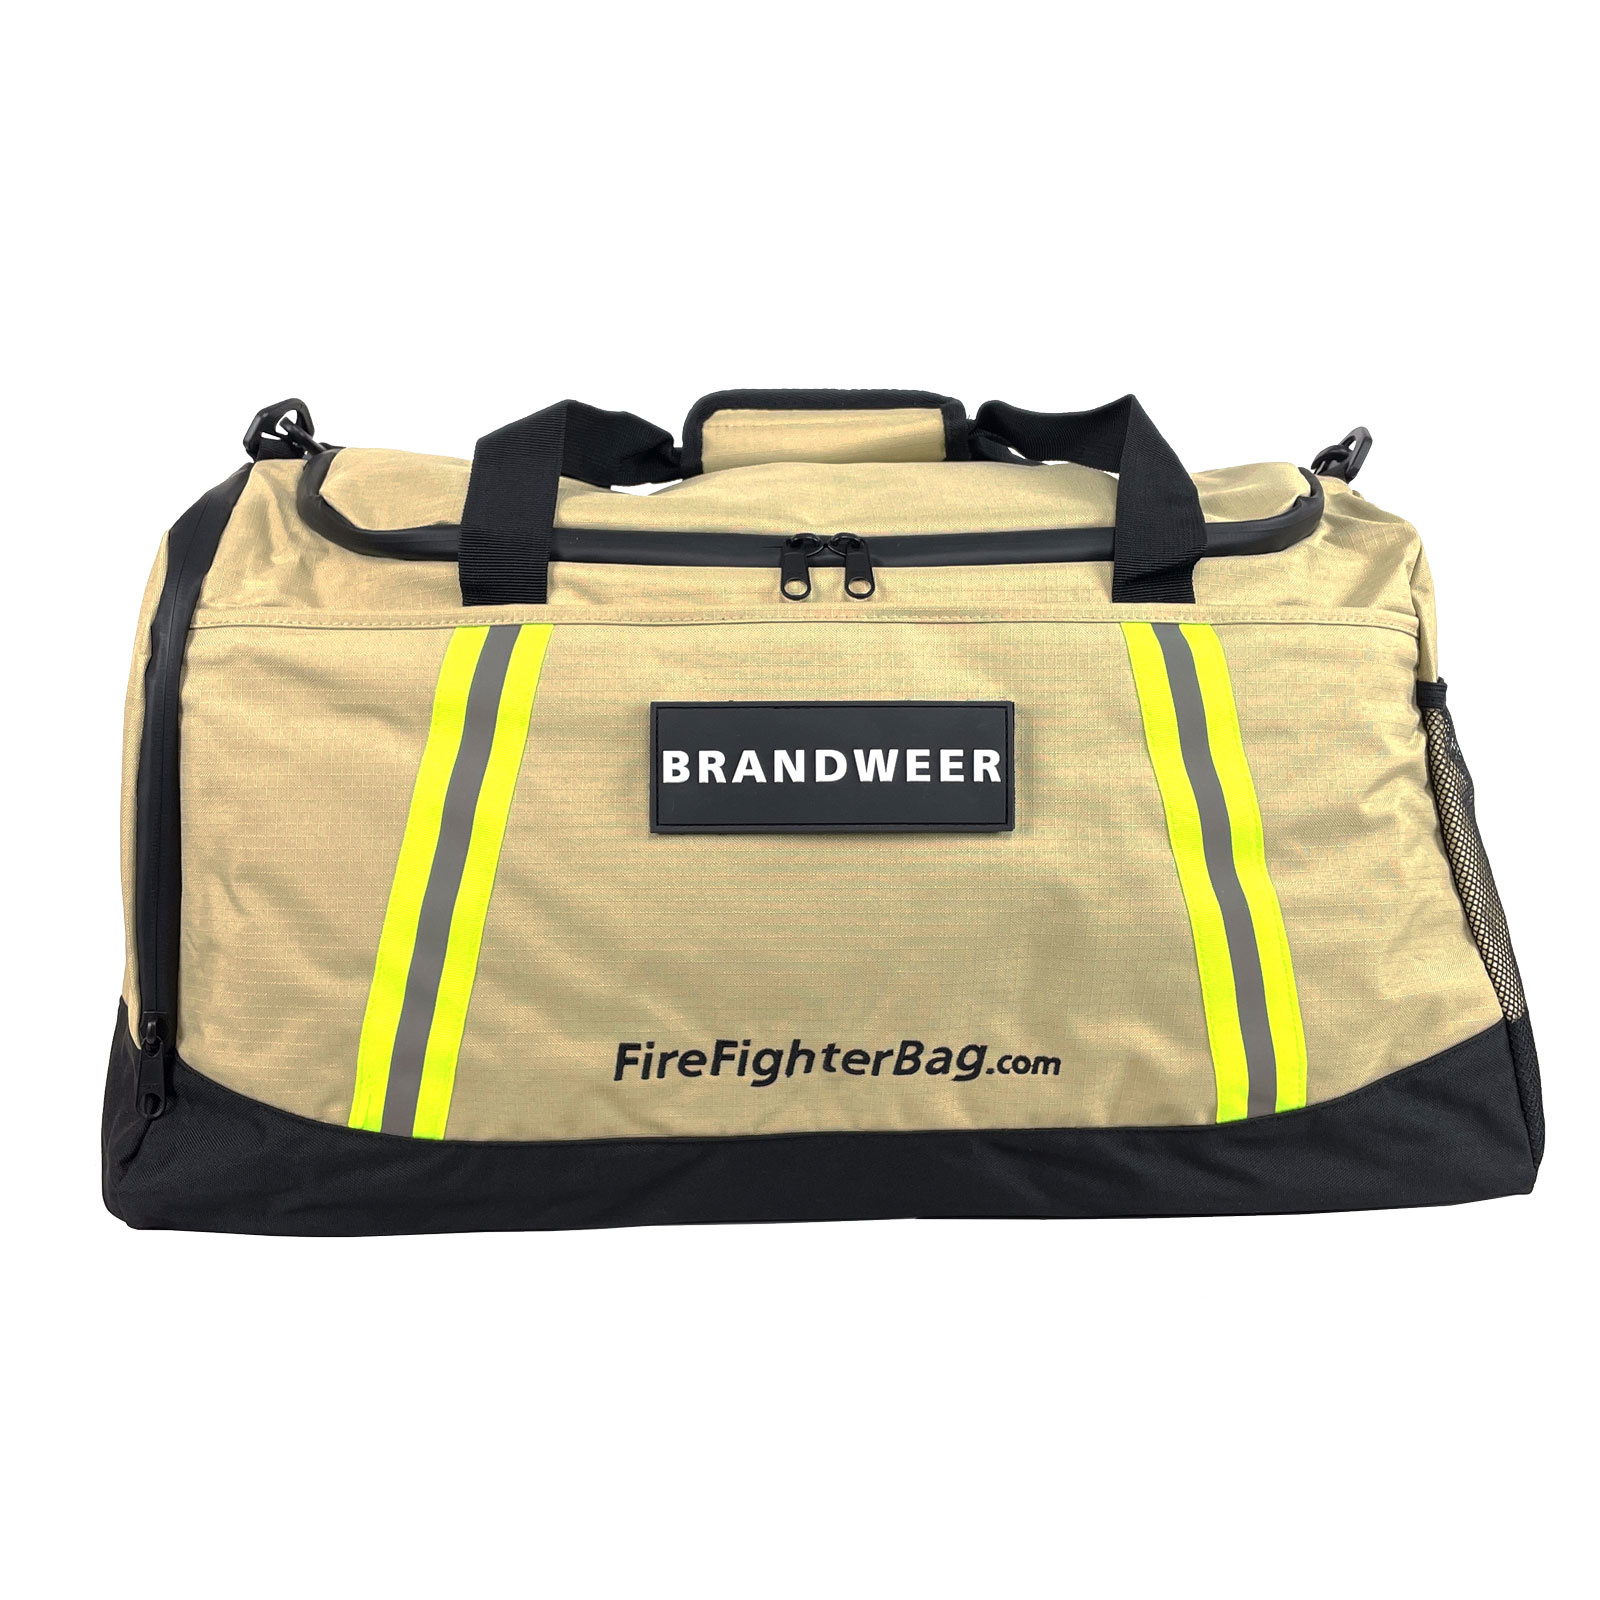 Firefighter Weekend Bag